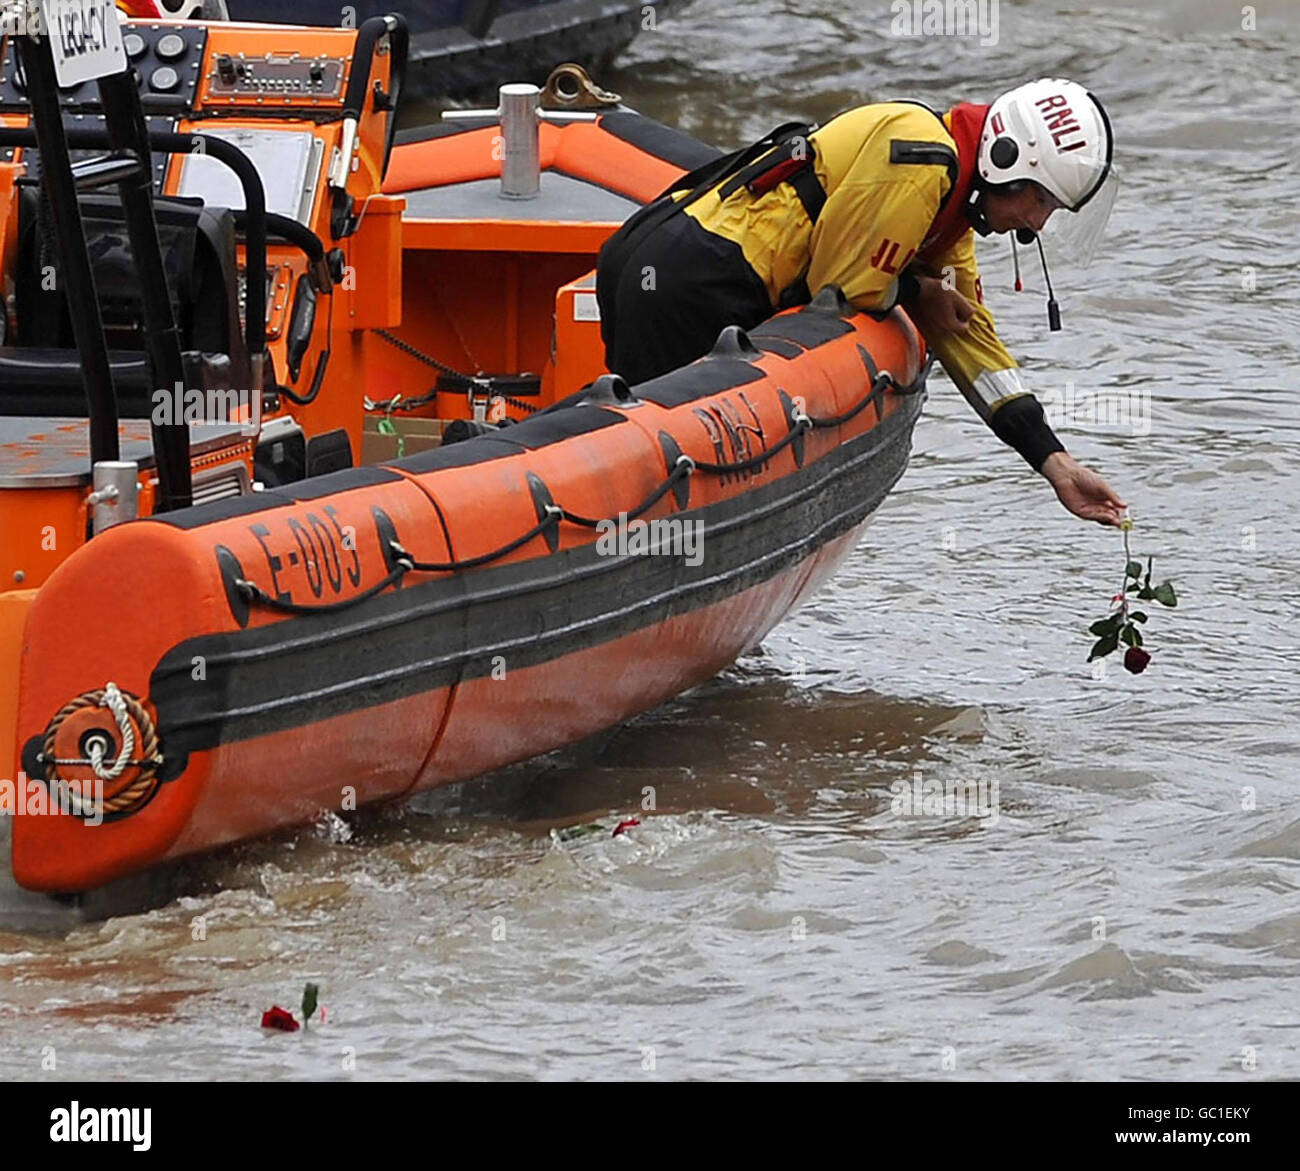 Ein Mitglied der RNLI lässt eine Rose in der Nähe der Stelle auf der Themse fallen, an der sich anlässlich des 20. Jahrestages der Katastrophe die Tragödie des Marchioness-Flussbootes ereignete. Stockfoto